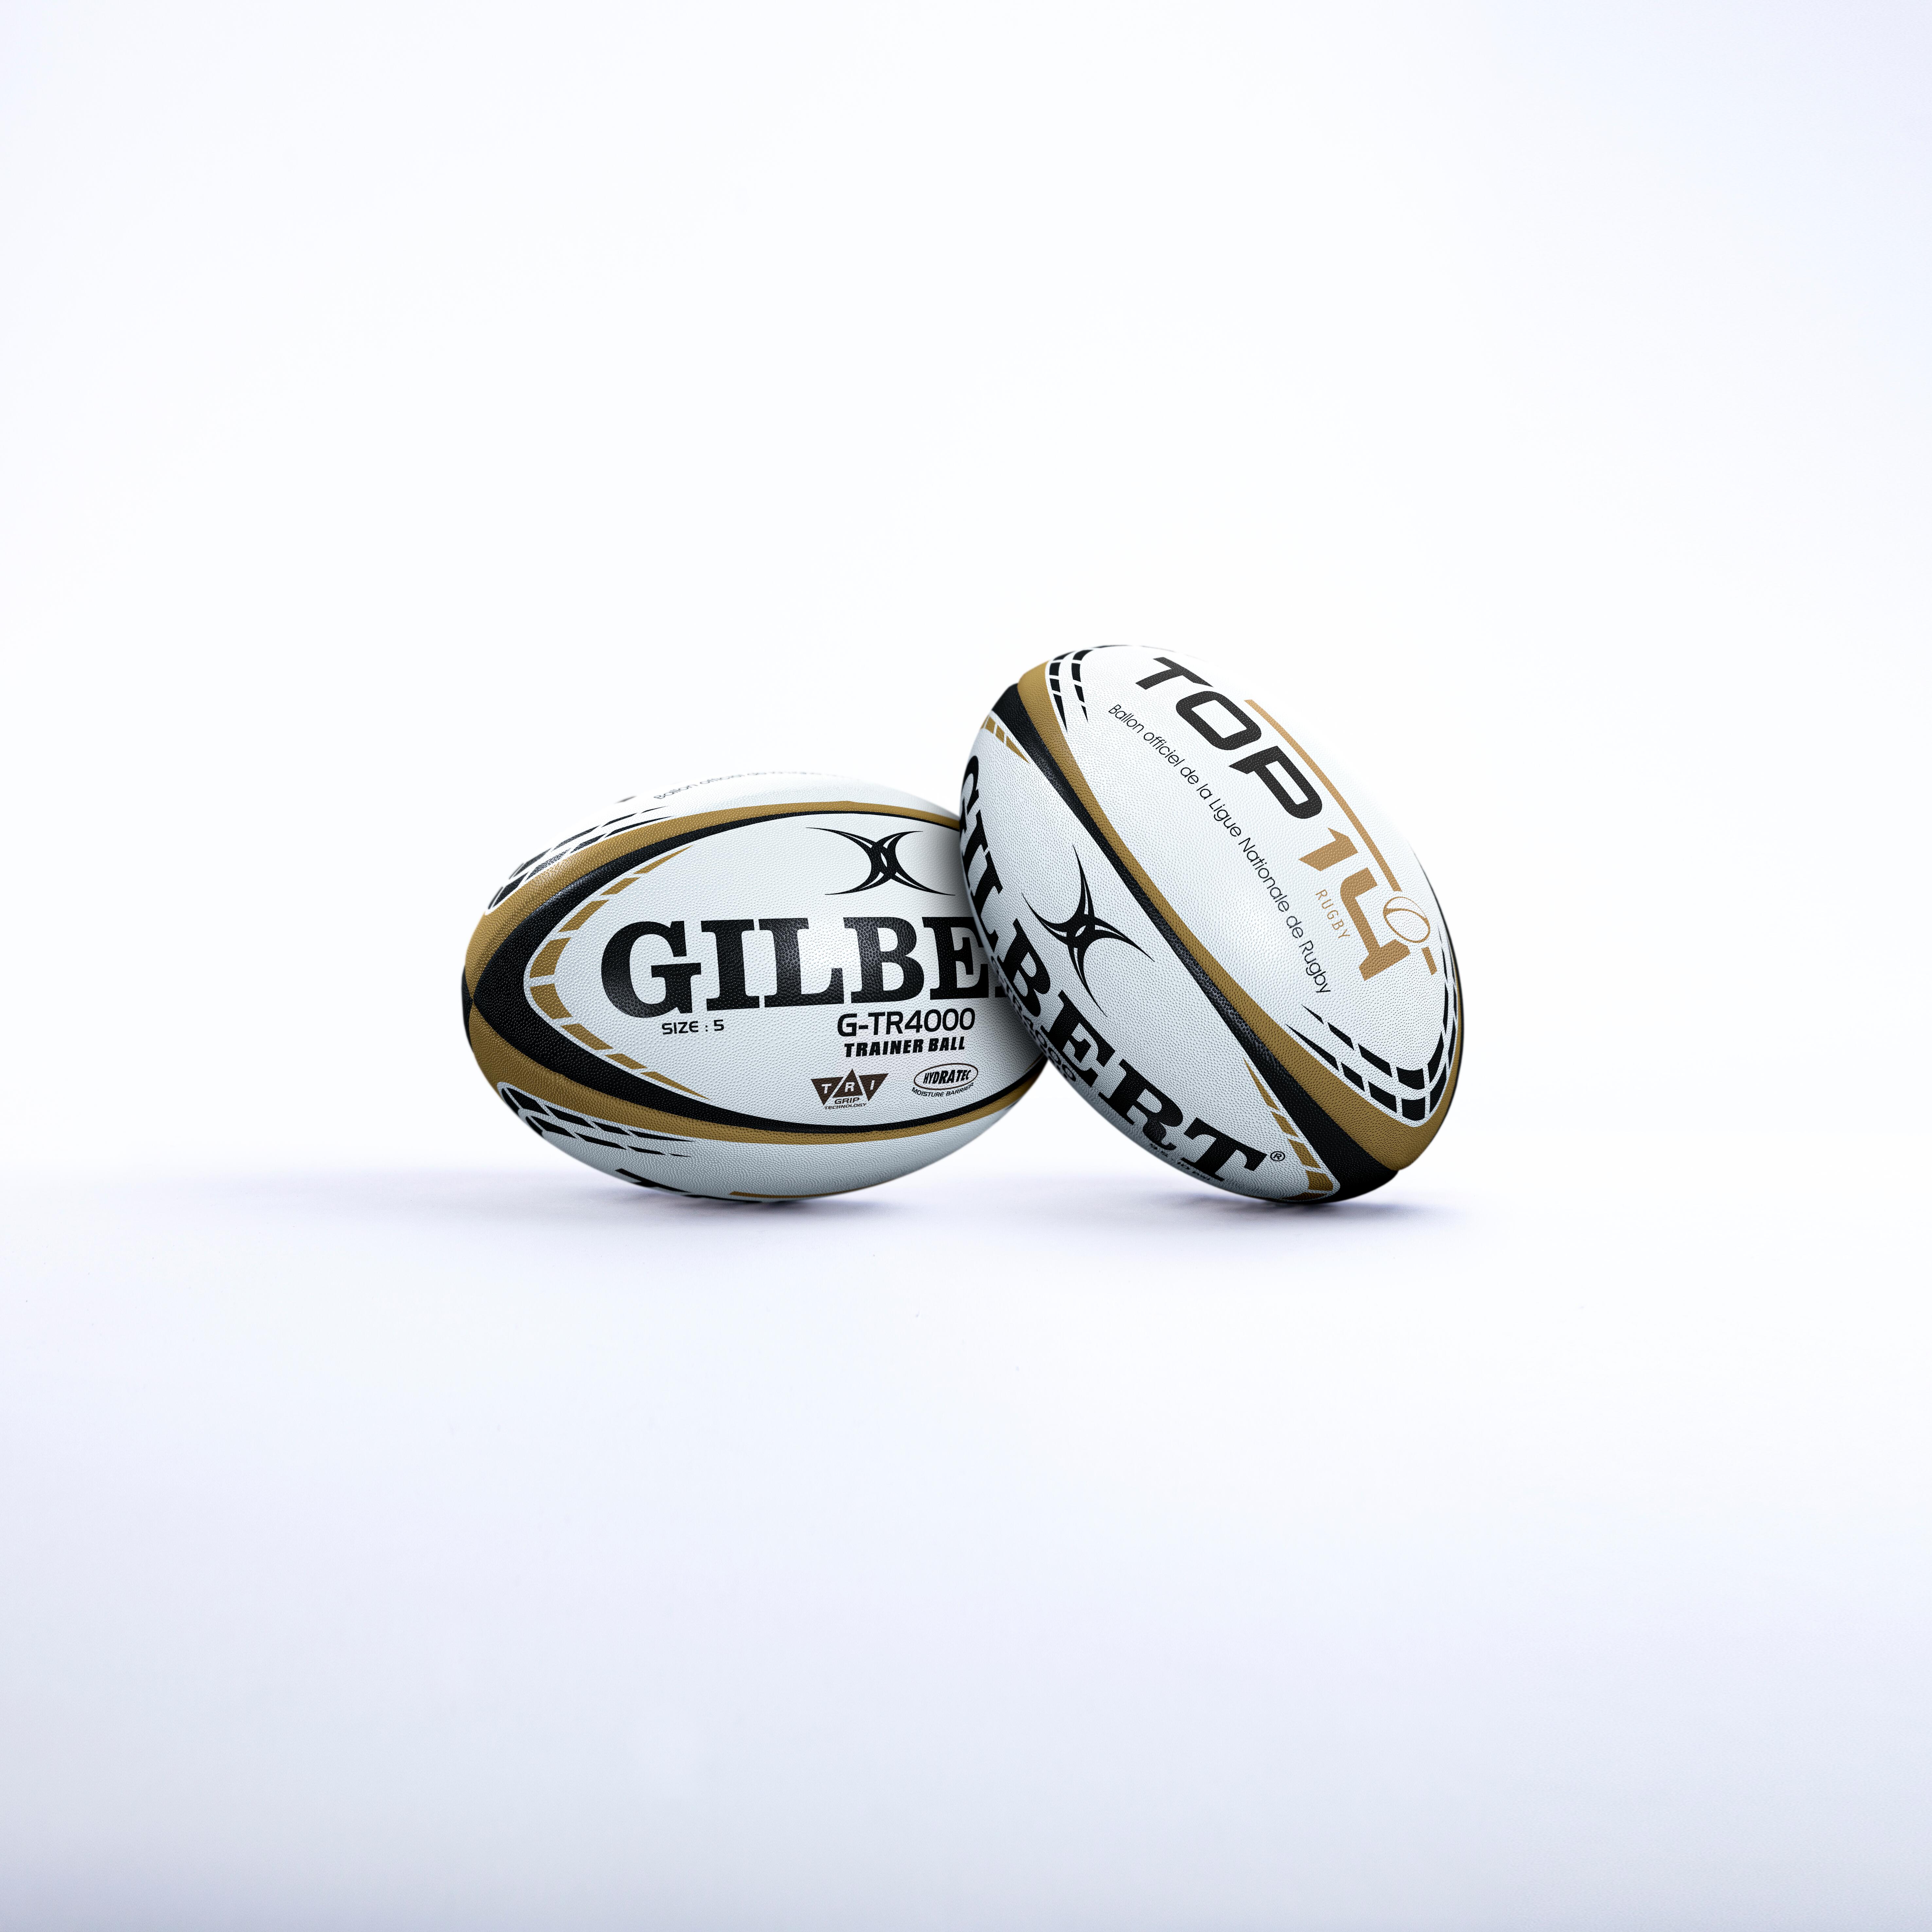 Minge Rugby GILBERT TOP 14 mărimea 5 alb-auriu Accesorii imagine noua